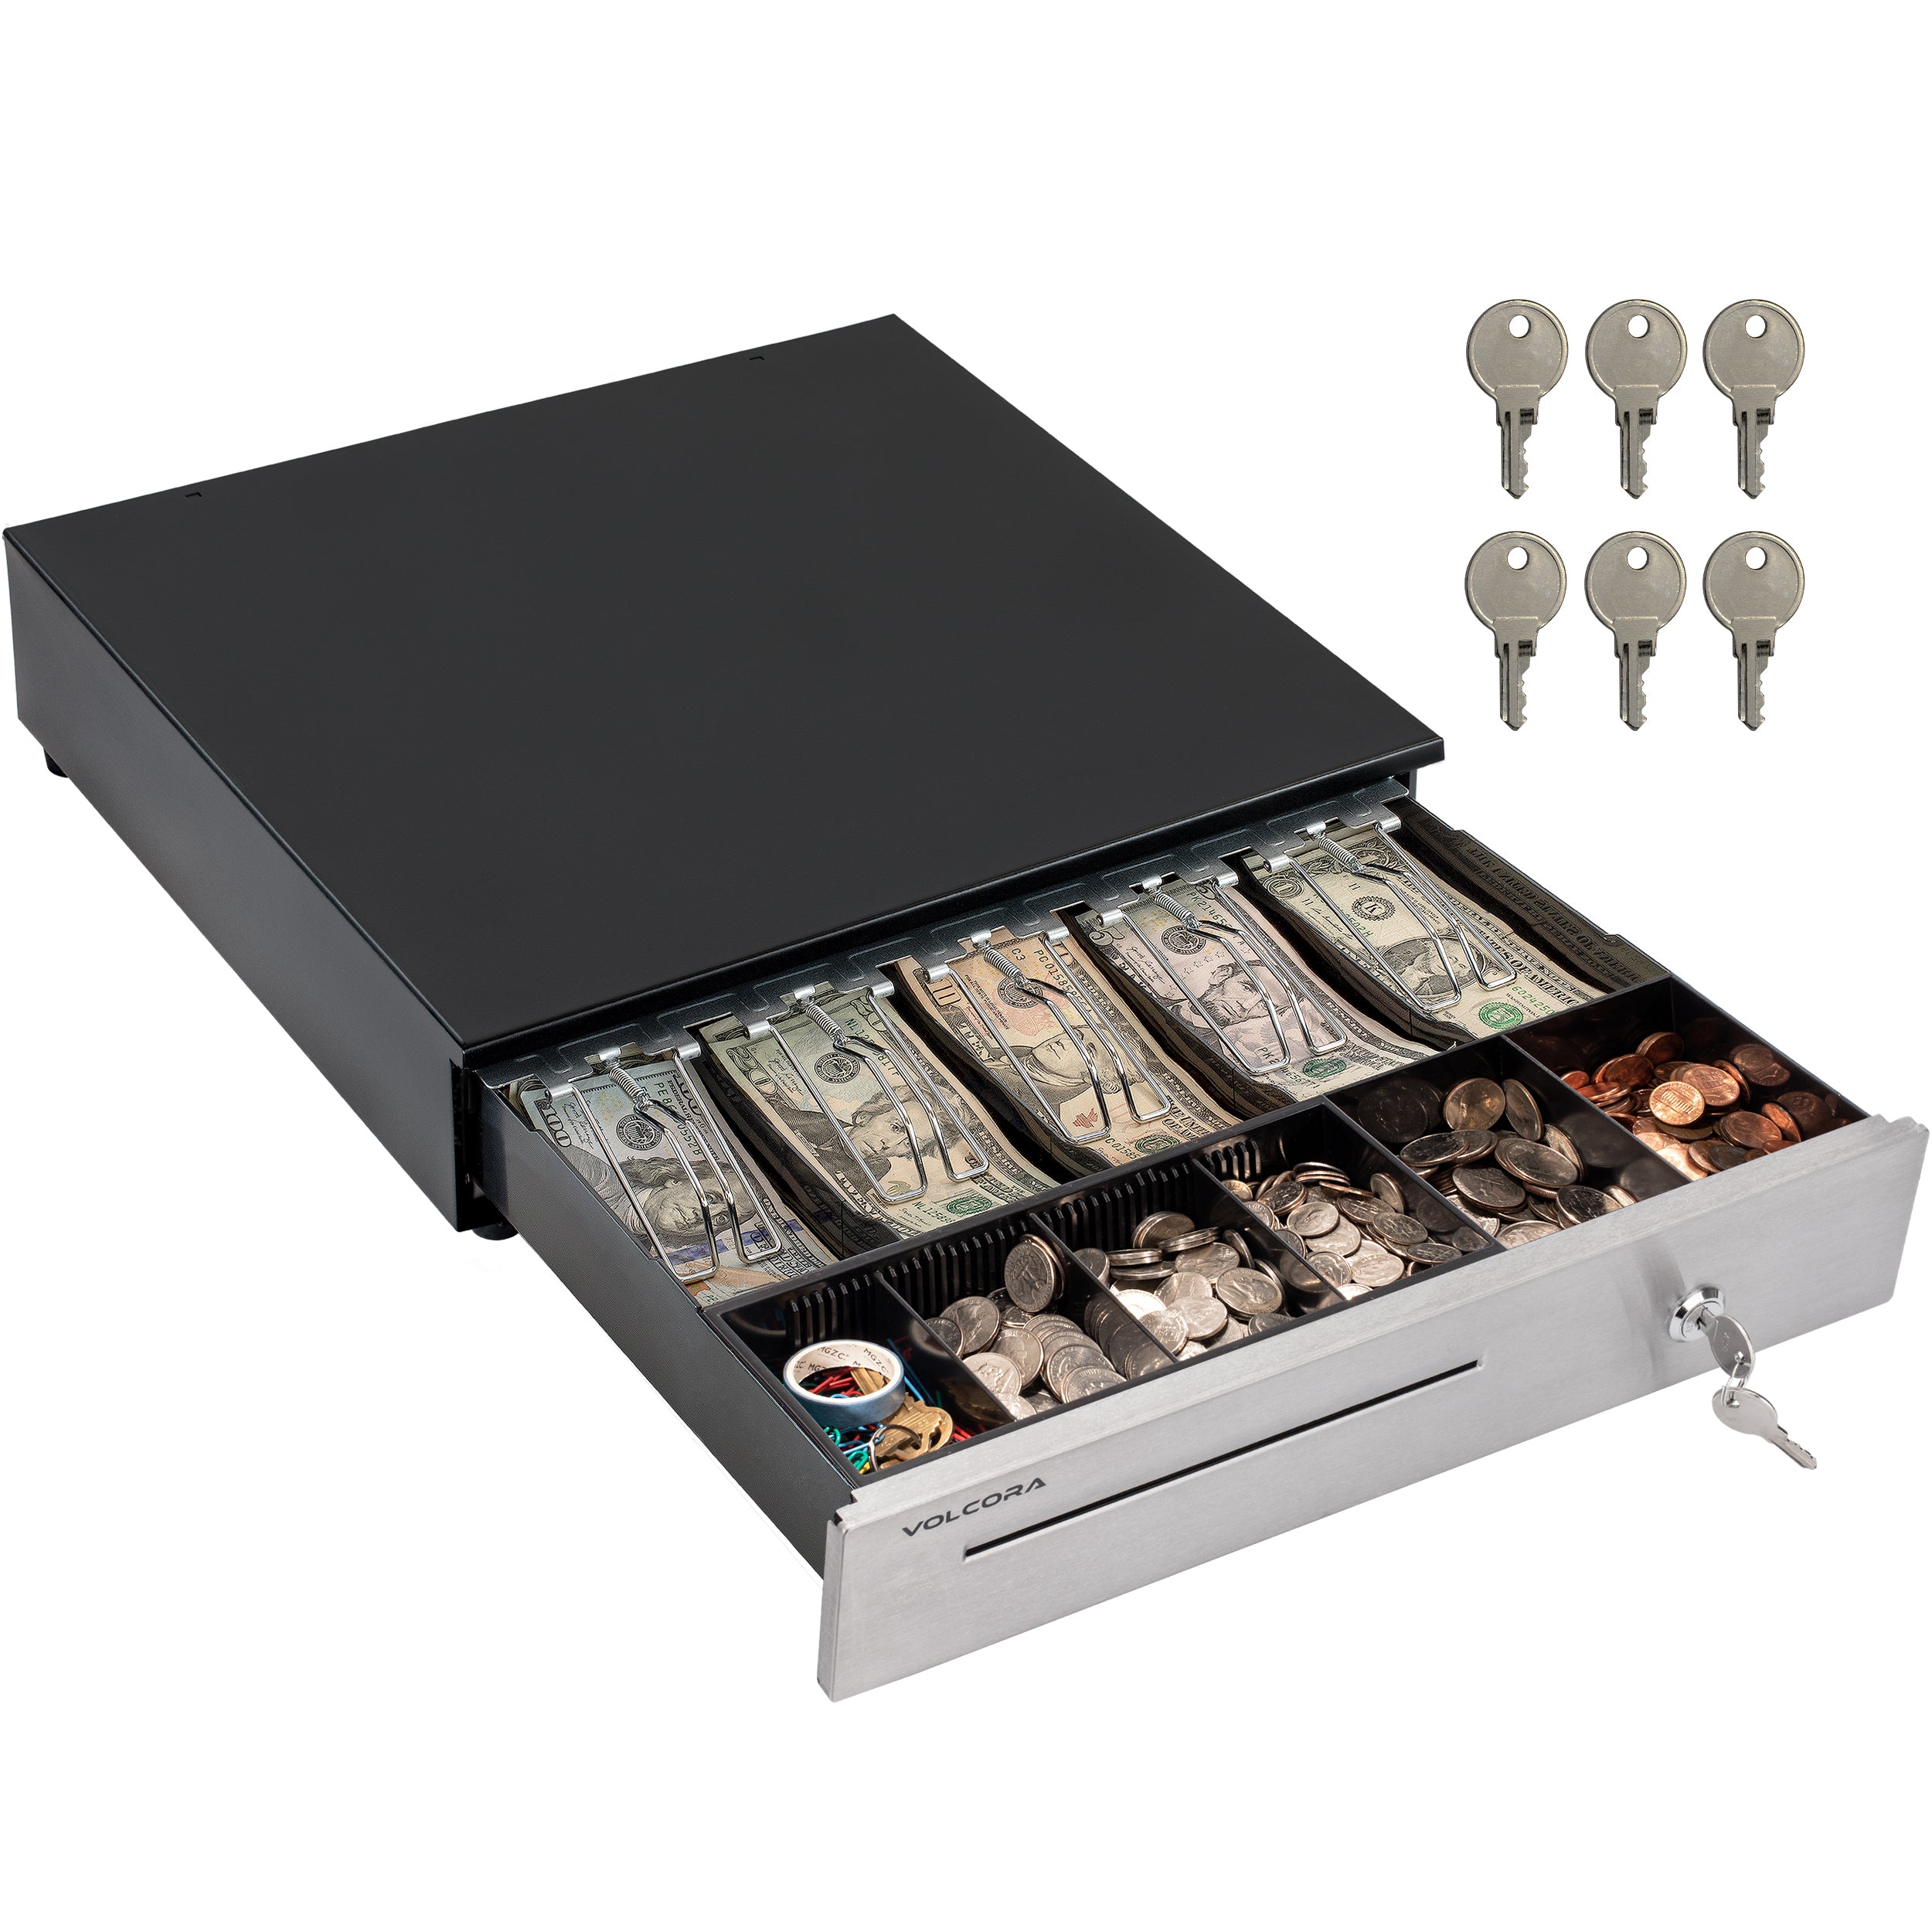 Cajón de caja registradora de 16'' con bandeja para efectivo de 5 billetes y 6 monedas, apertura automática, negro, con frente de acero inoxidable